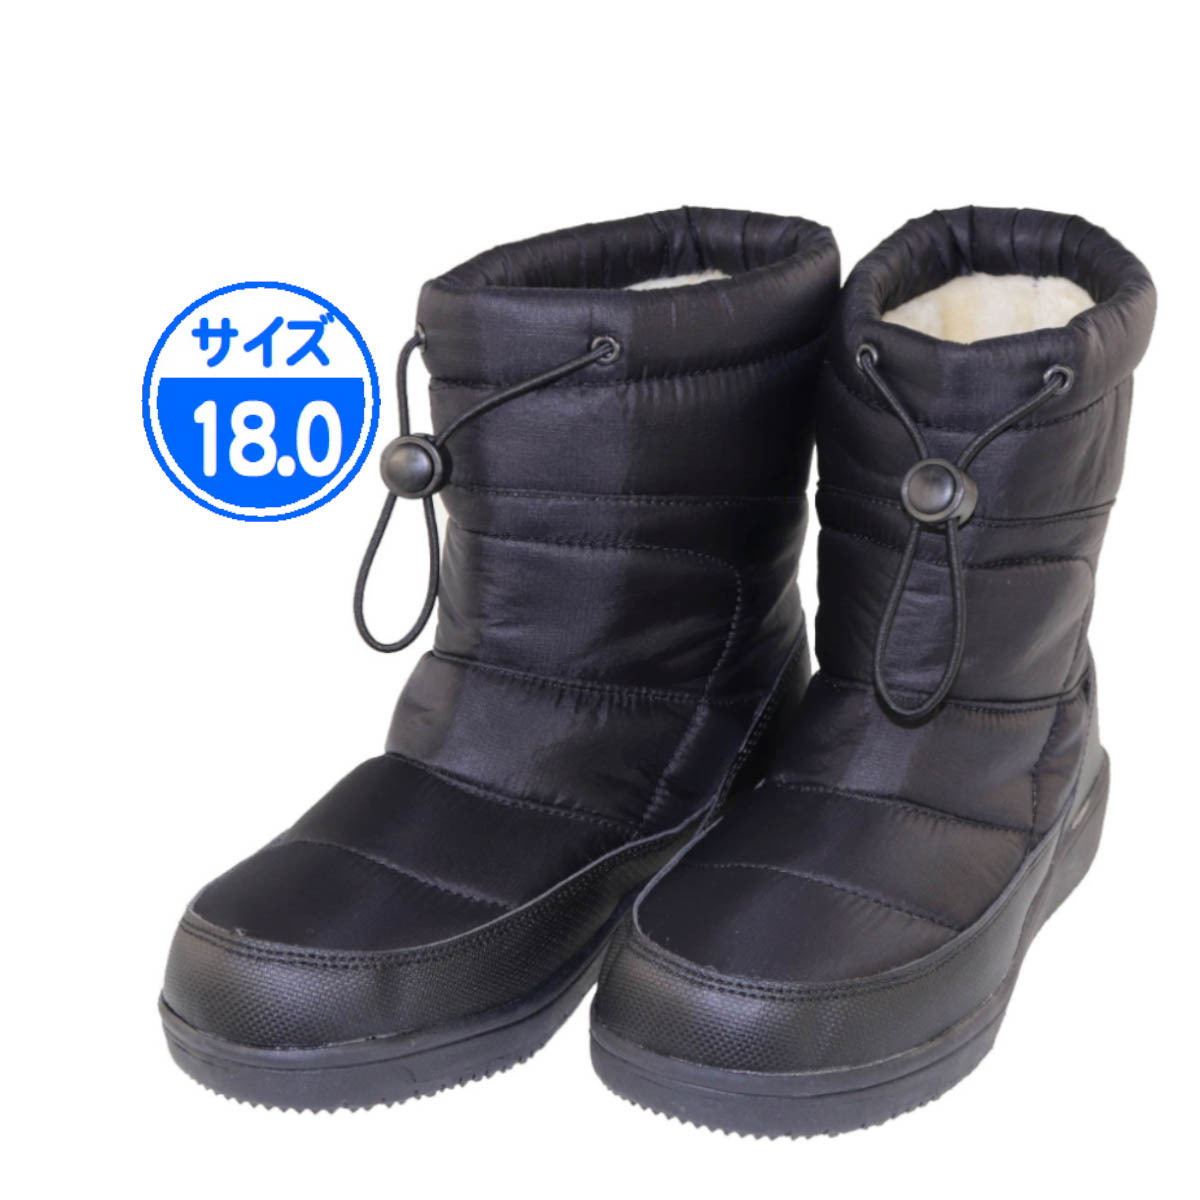 [ новый товар не использовался ]17983 детский защищающий от холода ботинки черный 18.0cm чёрный 